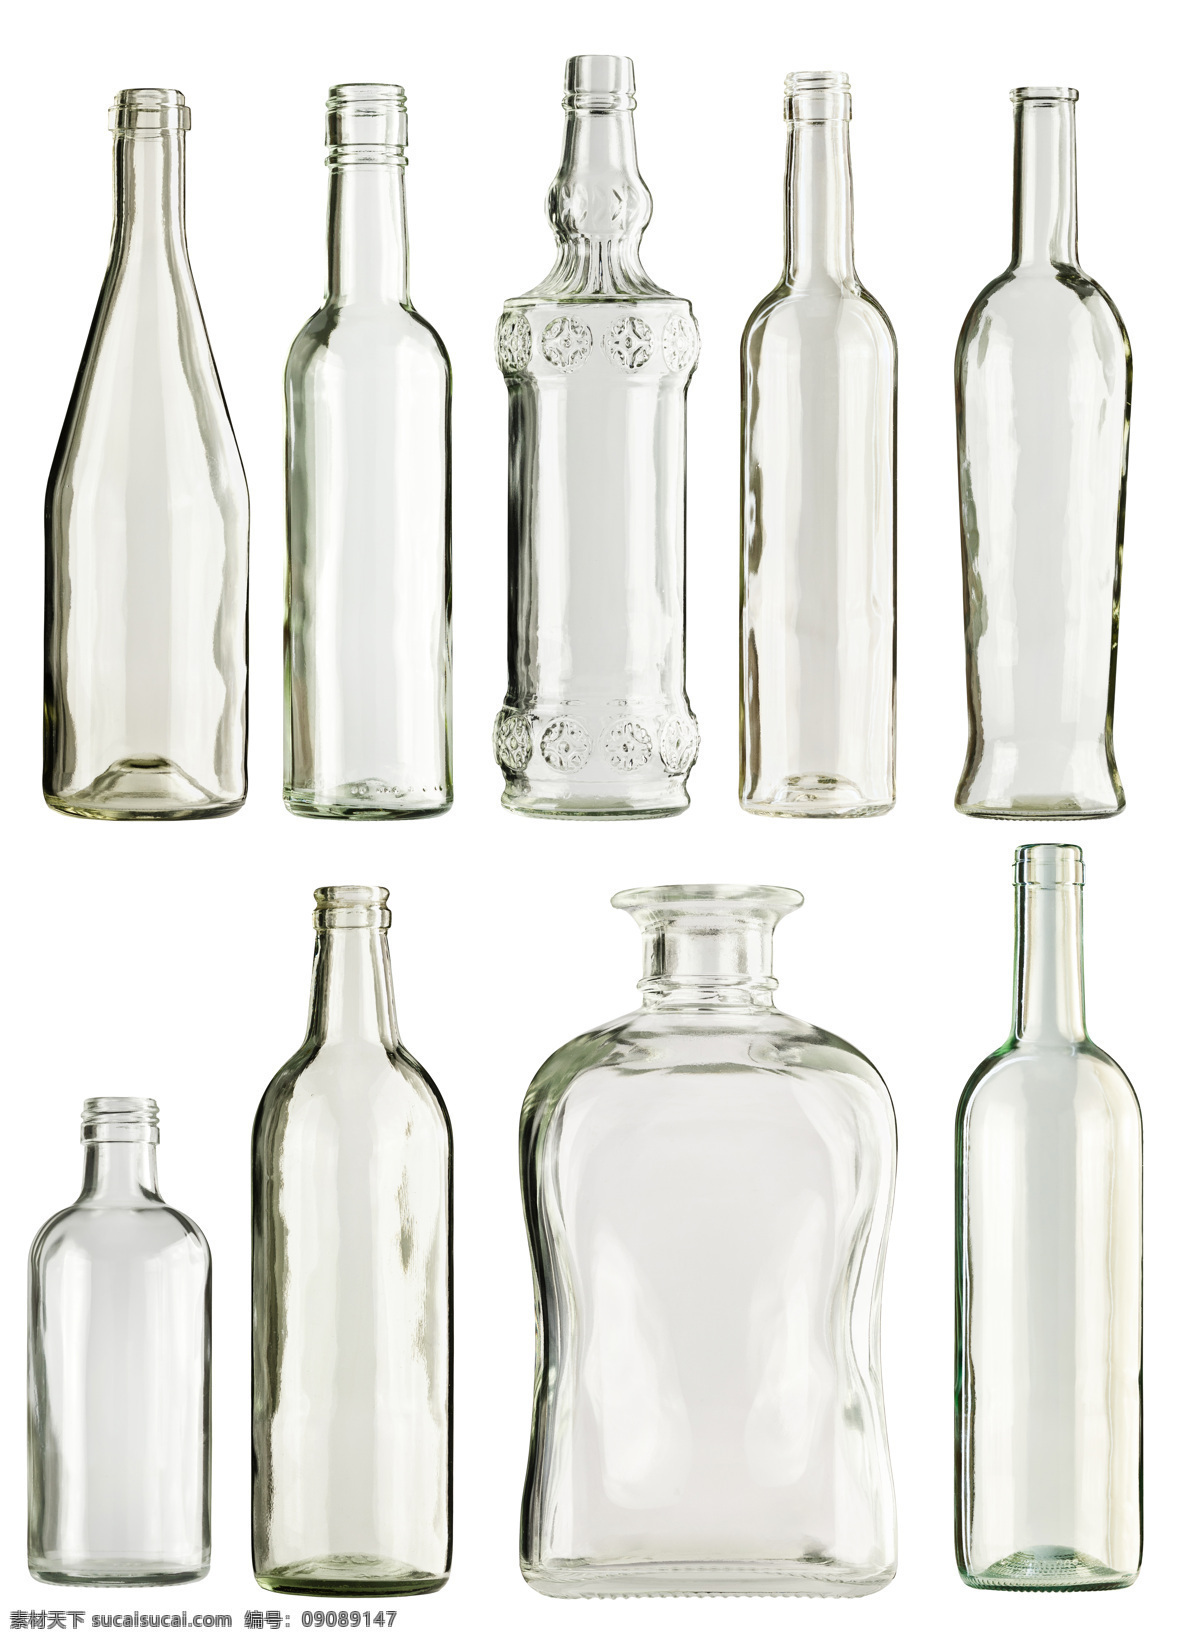 相 态 各异 玻璃瓶 瓶子 瓶子设计 形态各异 酒类图片 餐饮美食